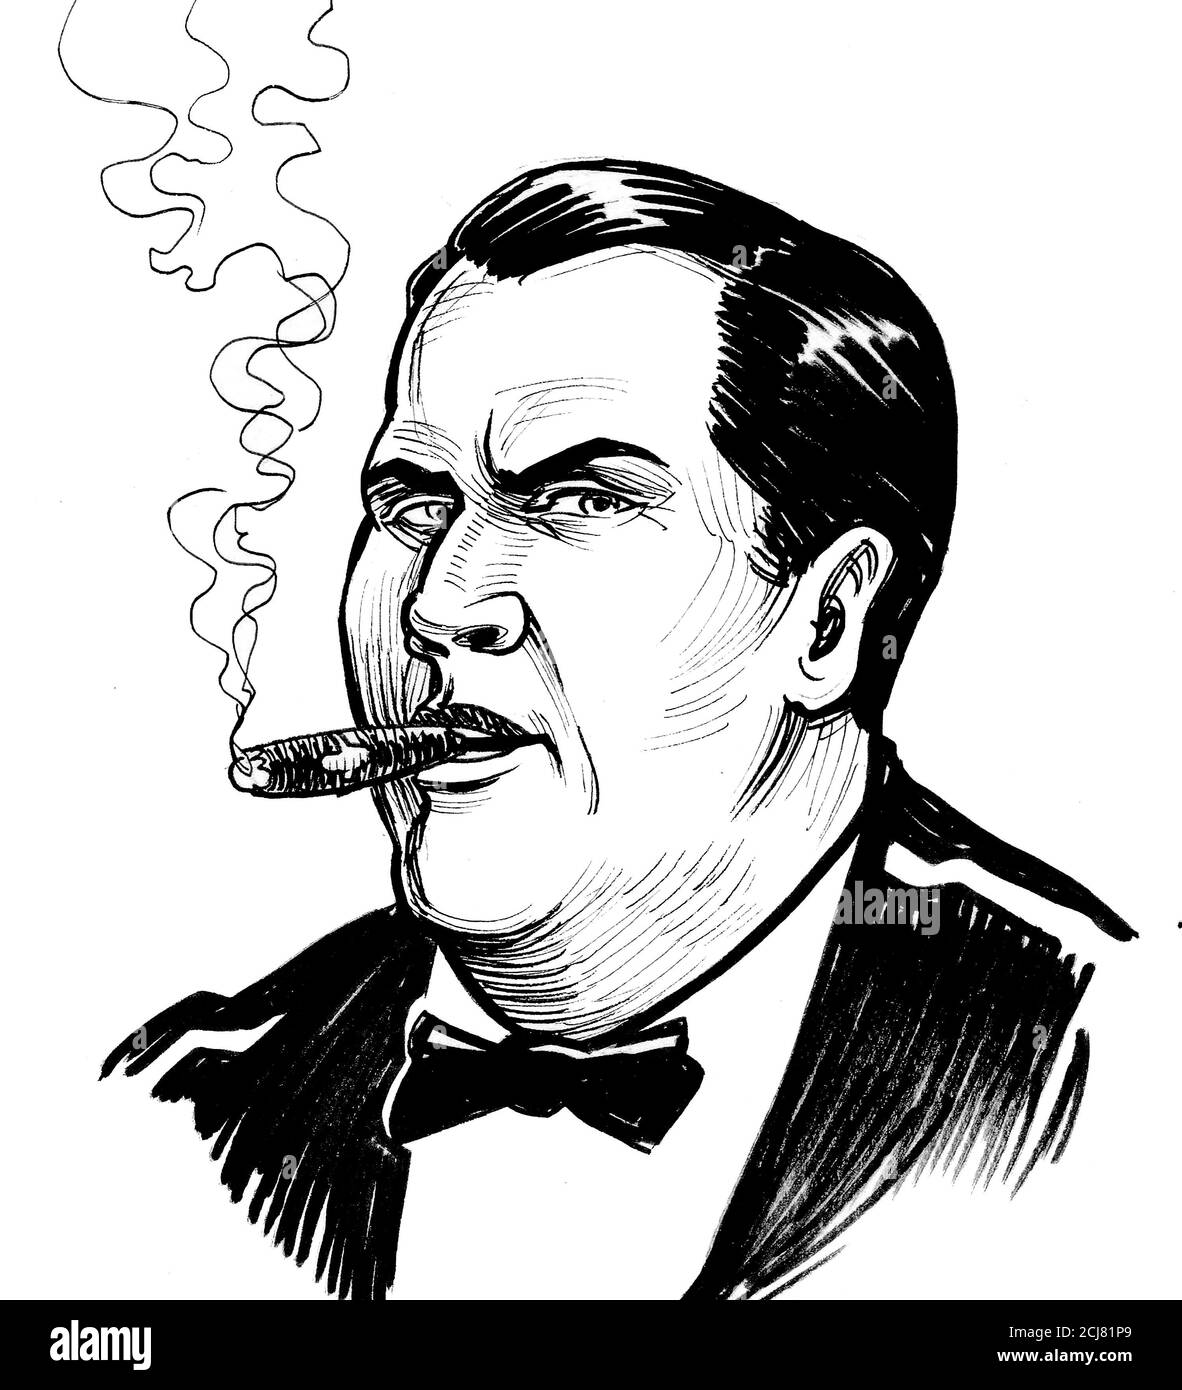 Homme riche fumant un cigare. Dessin noir et blanc Banque D'Images